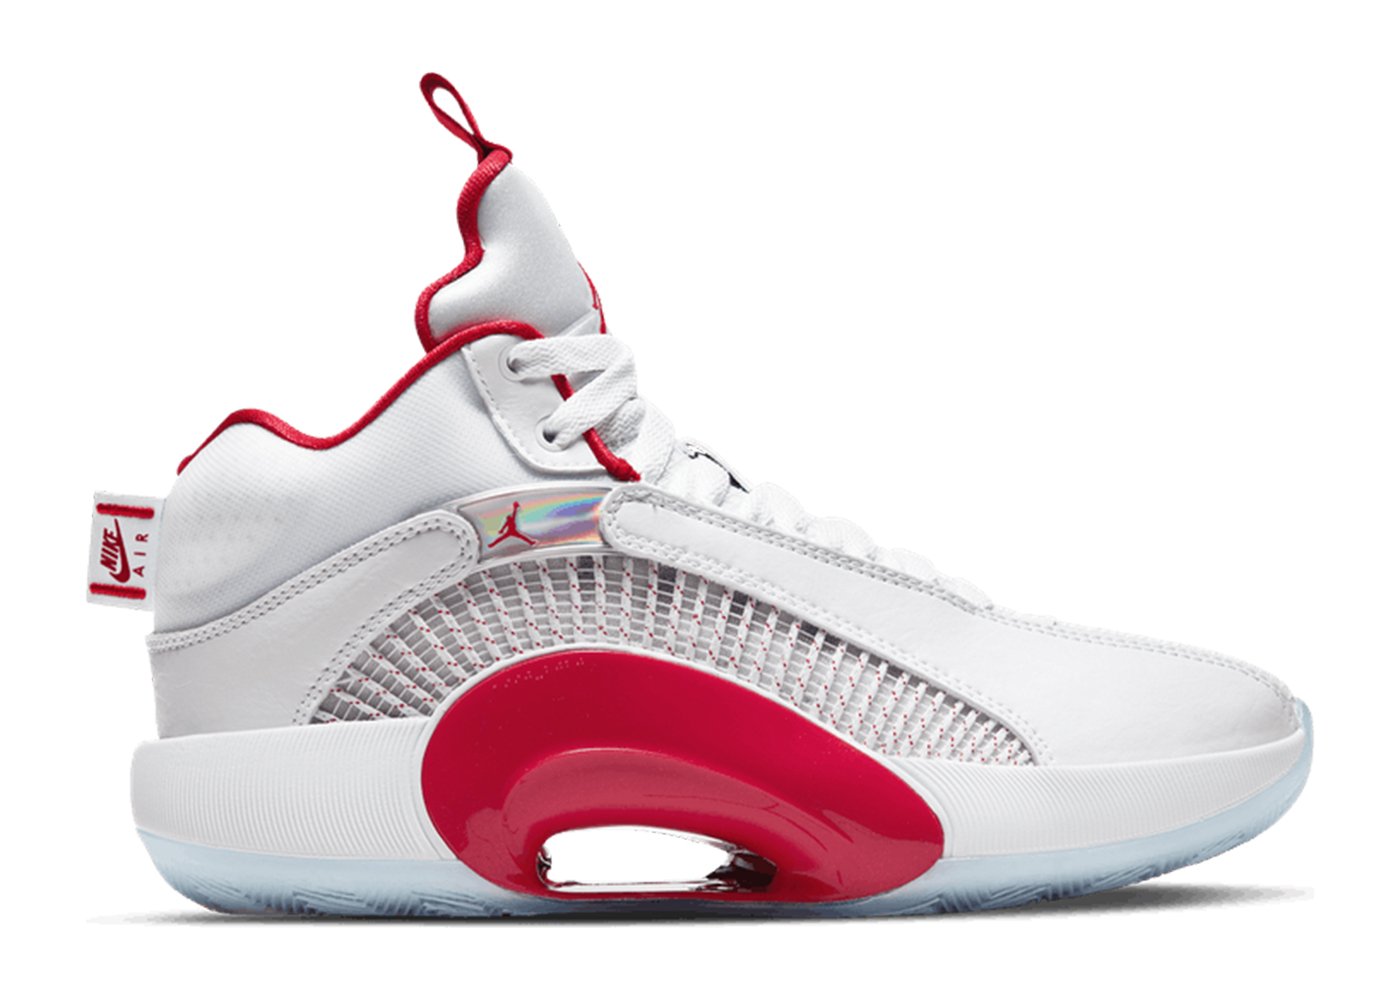 Jordan XXXV White Fire Red (GS) sneakers